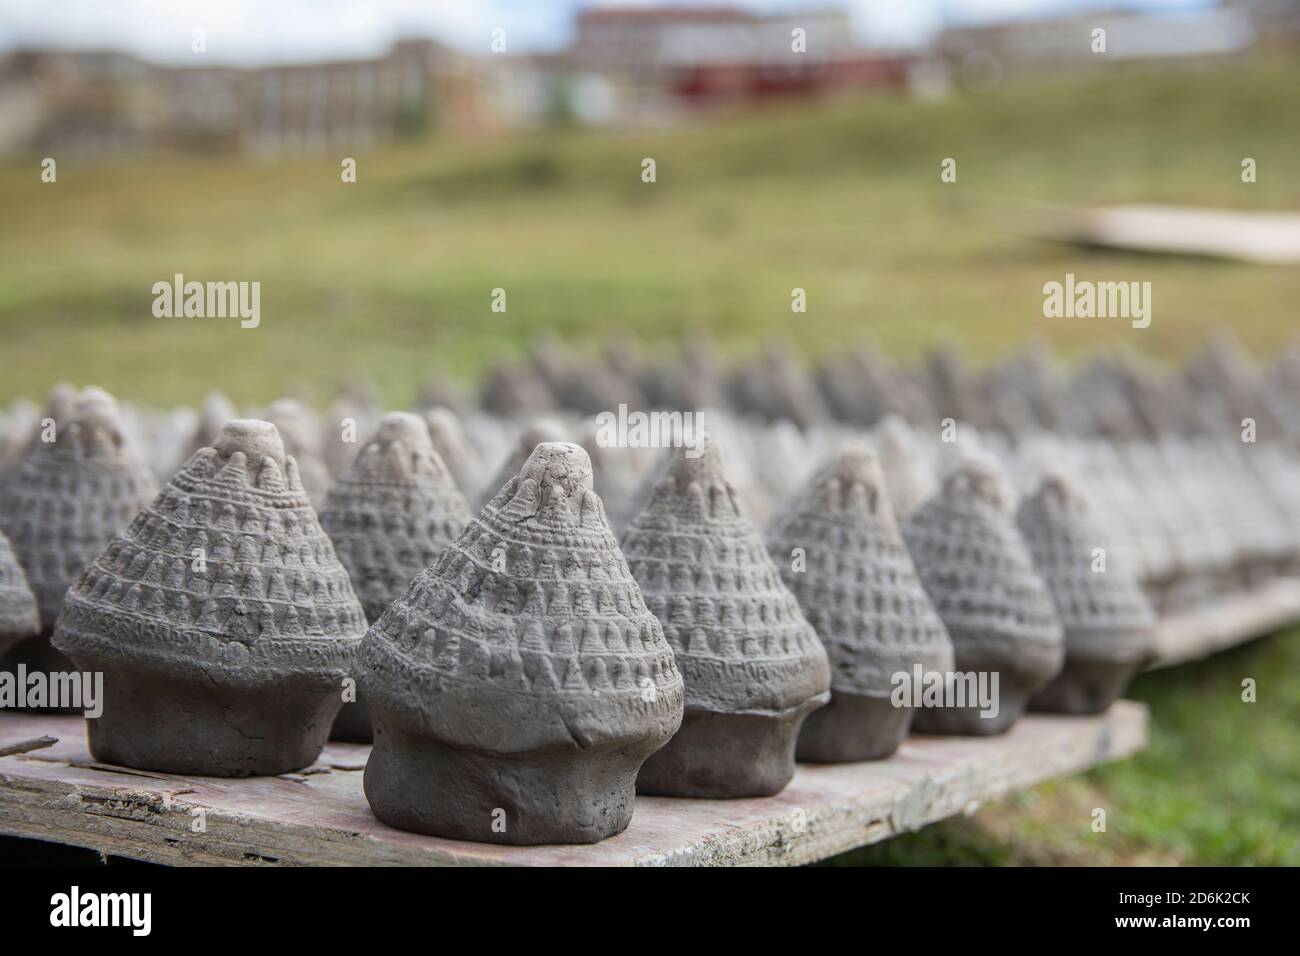 Arte Tibetana: Molti coni 'TSA-tsaa' che vengono cotti al sole. Un fascino tradizionale di argilla lucy, in forma di 'Chorten' (un monumento buddista), usato per lo spirito Foto Stock